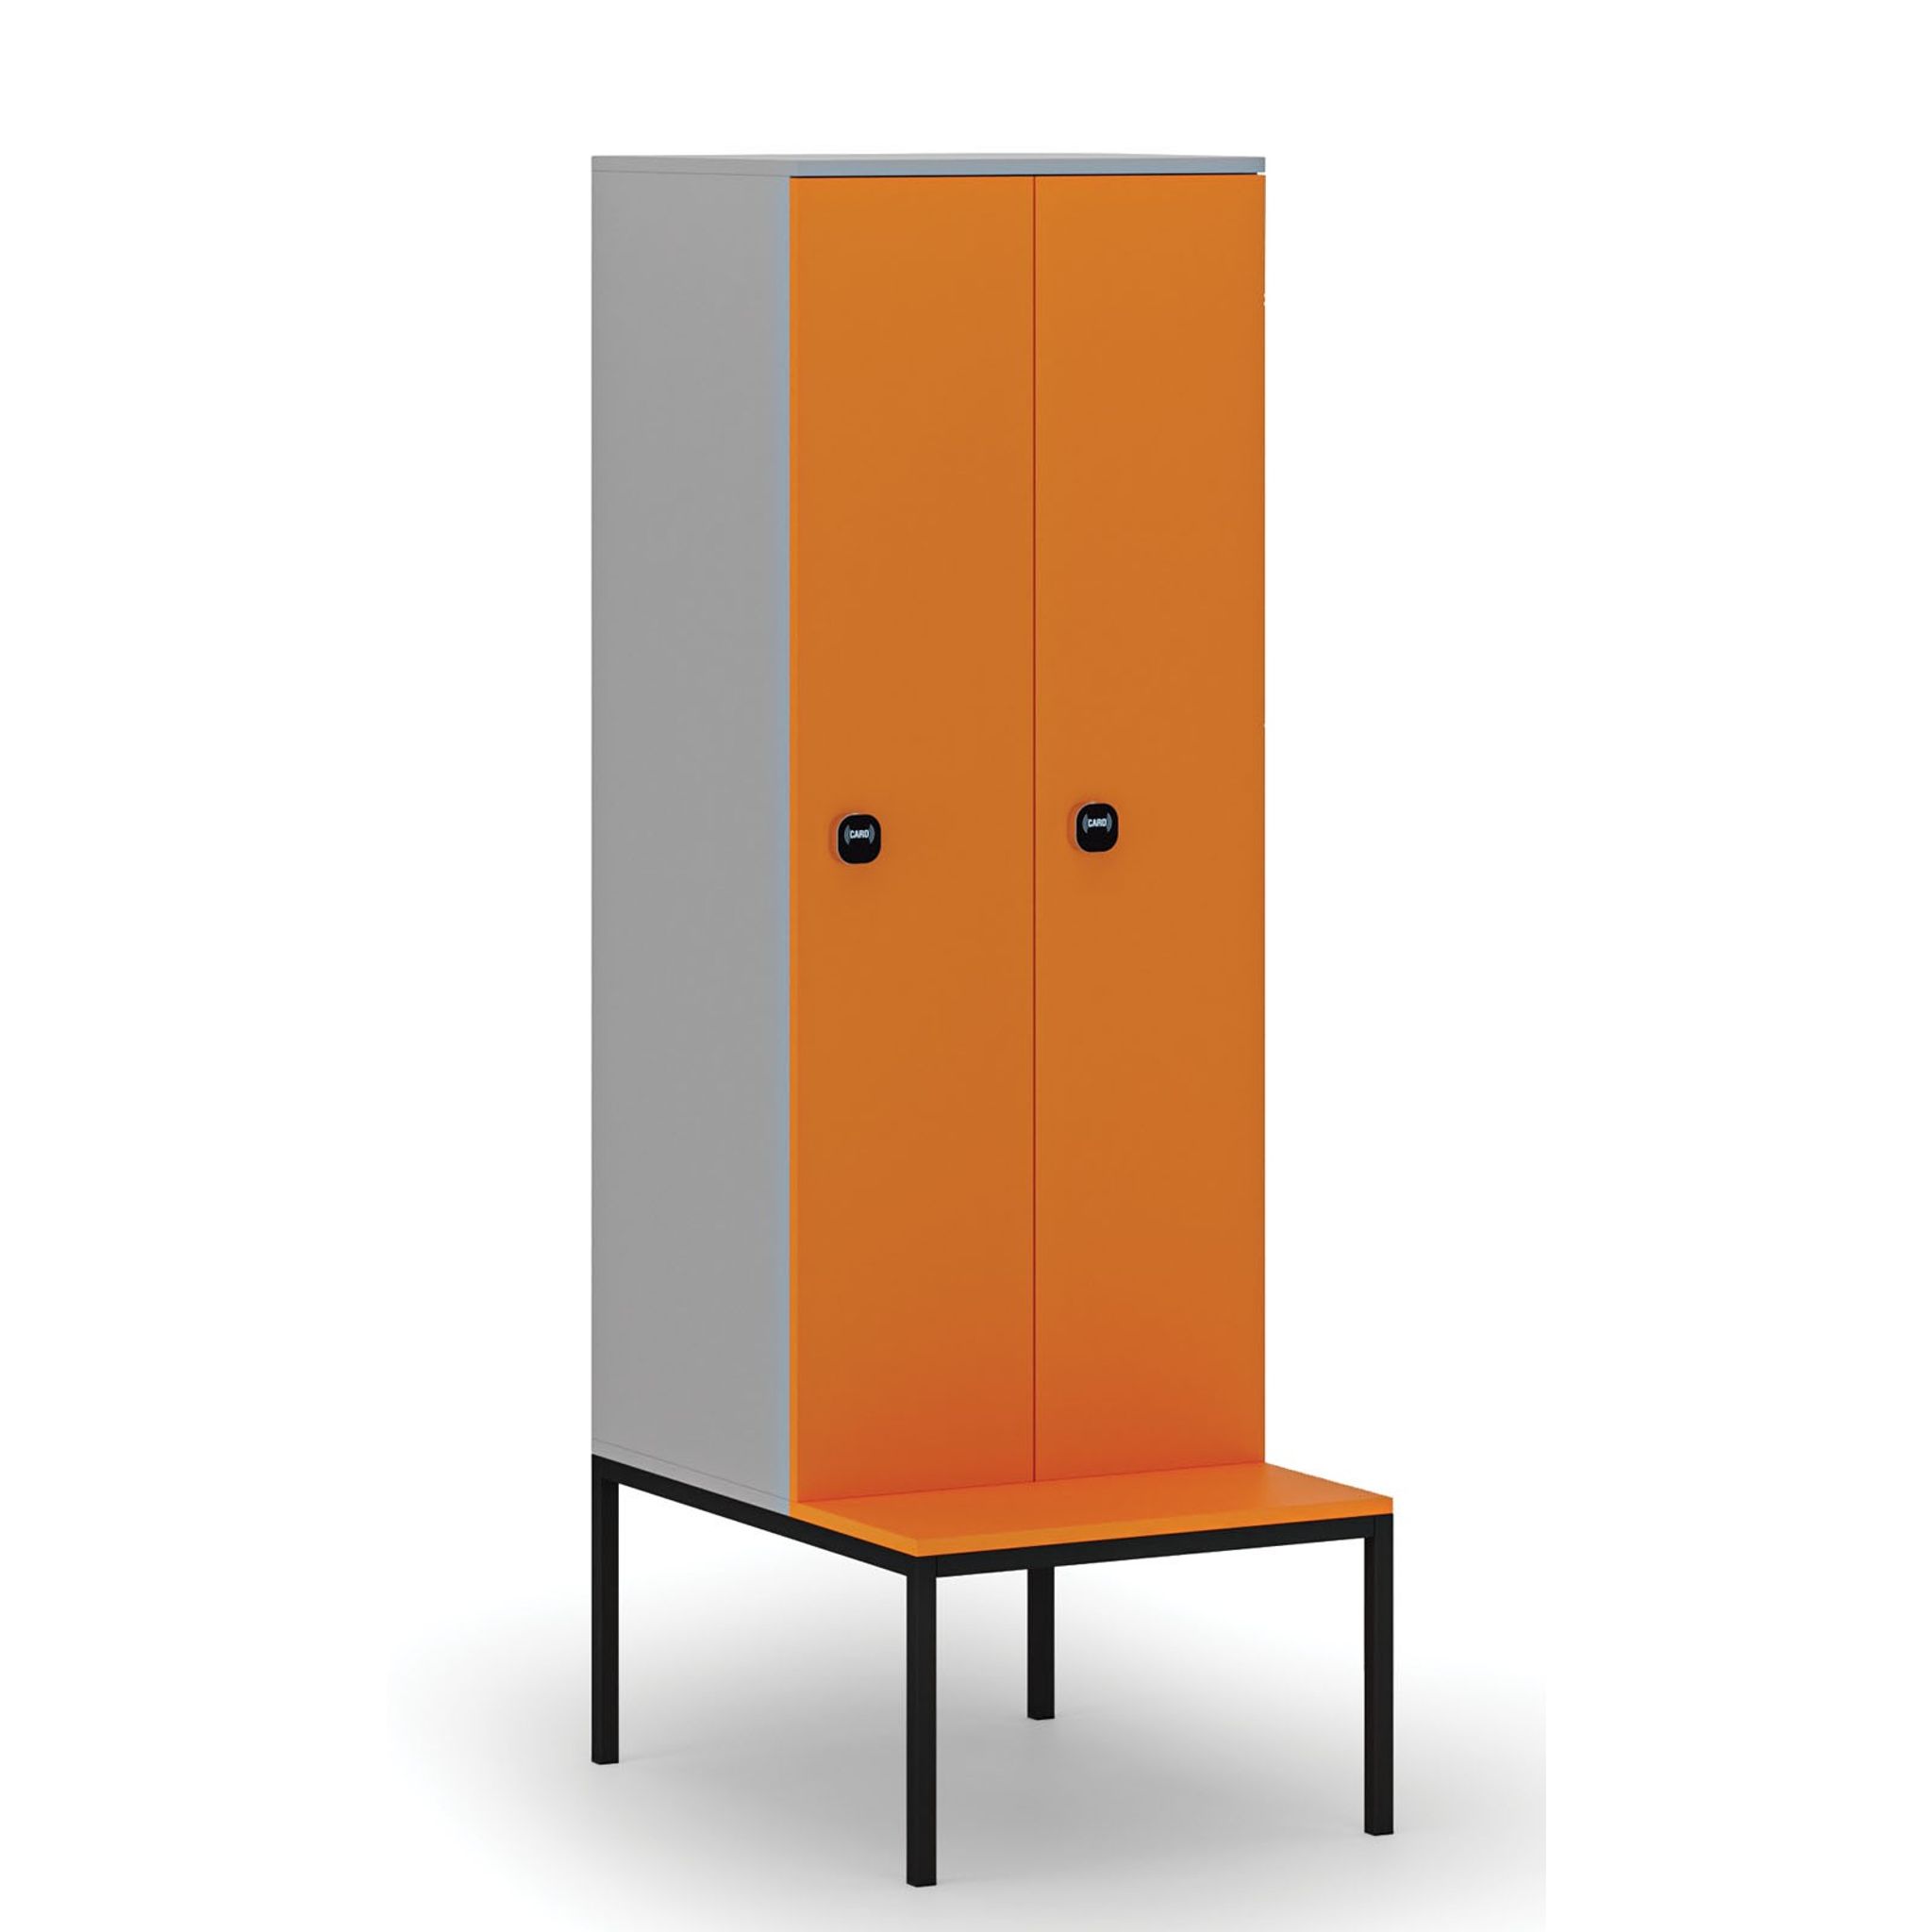 Dřevěná šatní skříňka s lavičkou, 2 oddíly, RFID zámek, šedá/oranžová